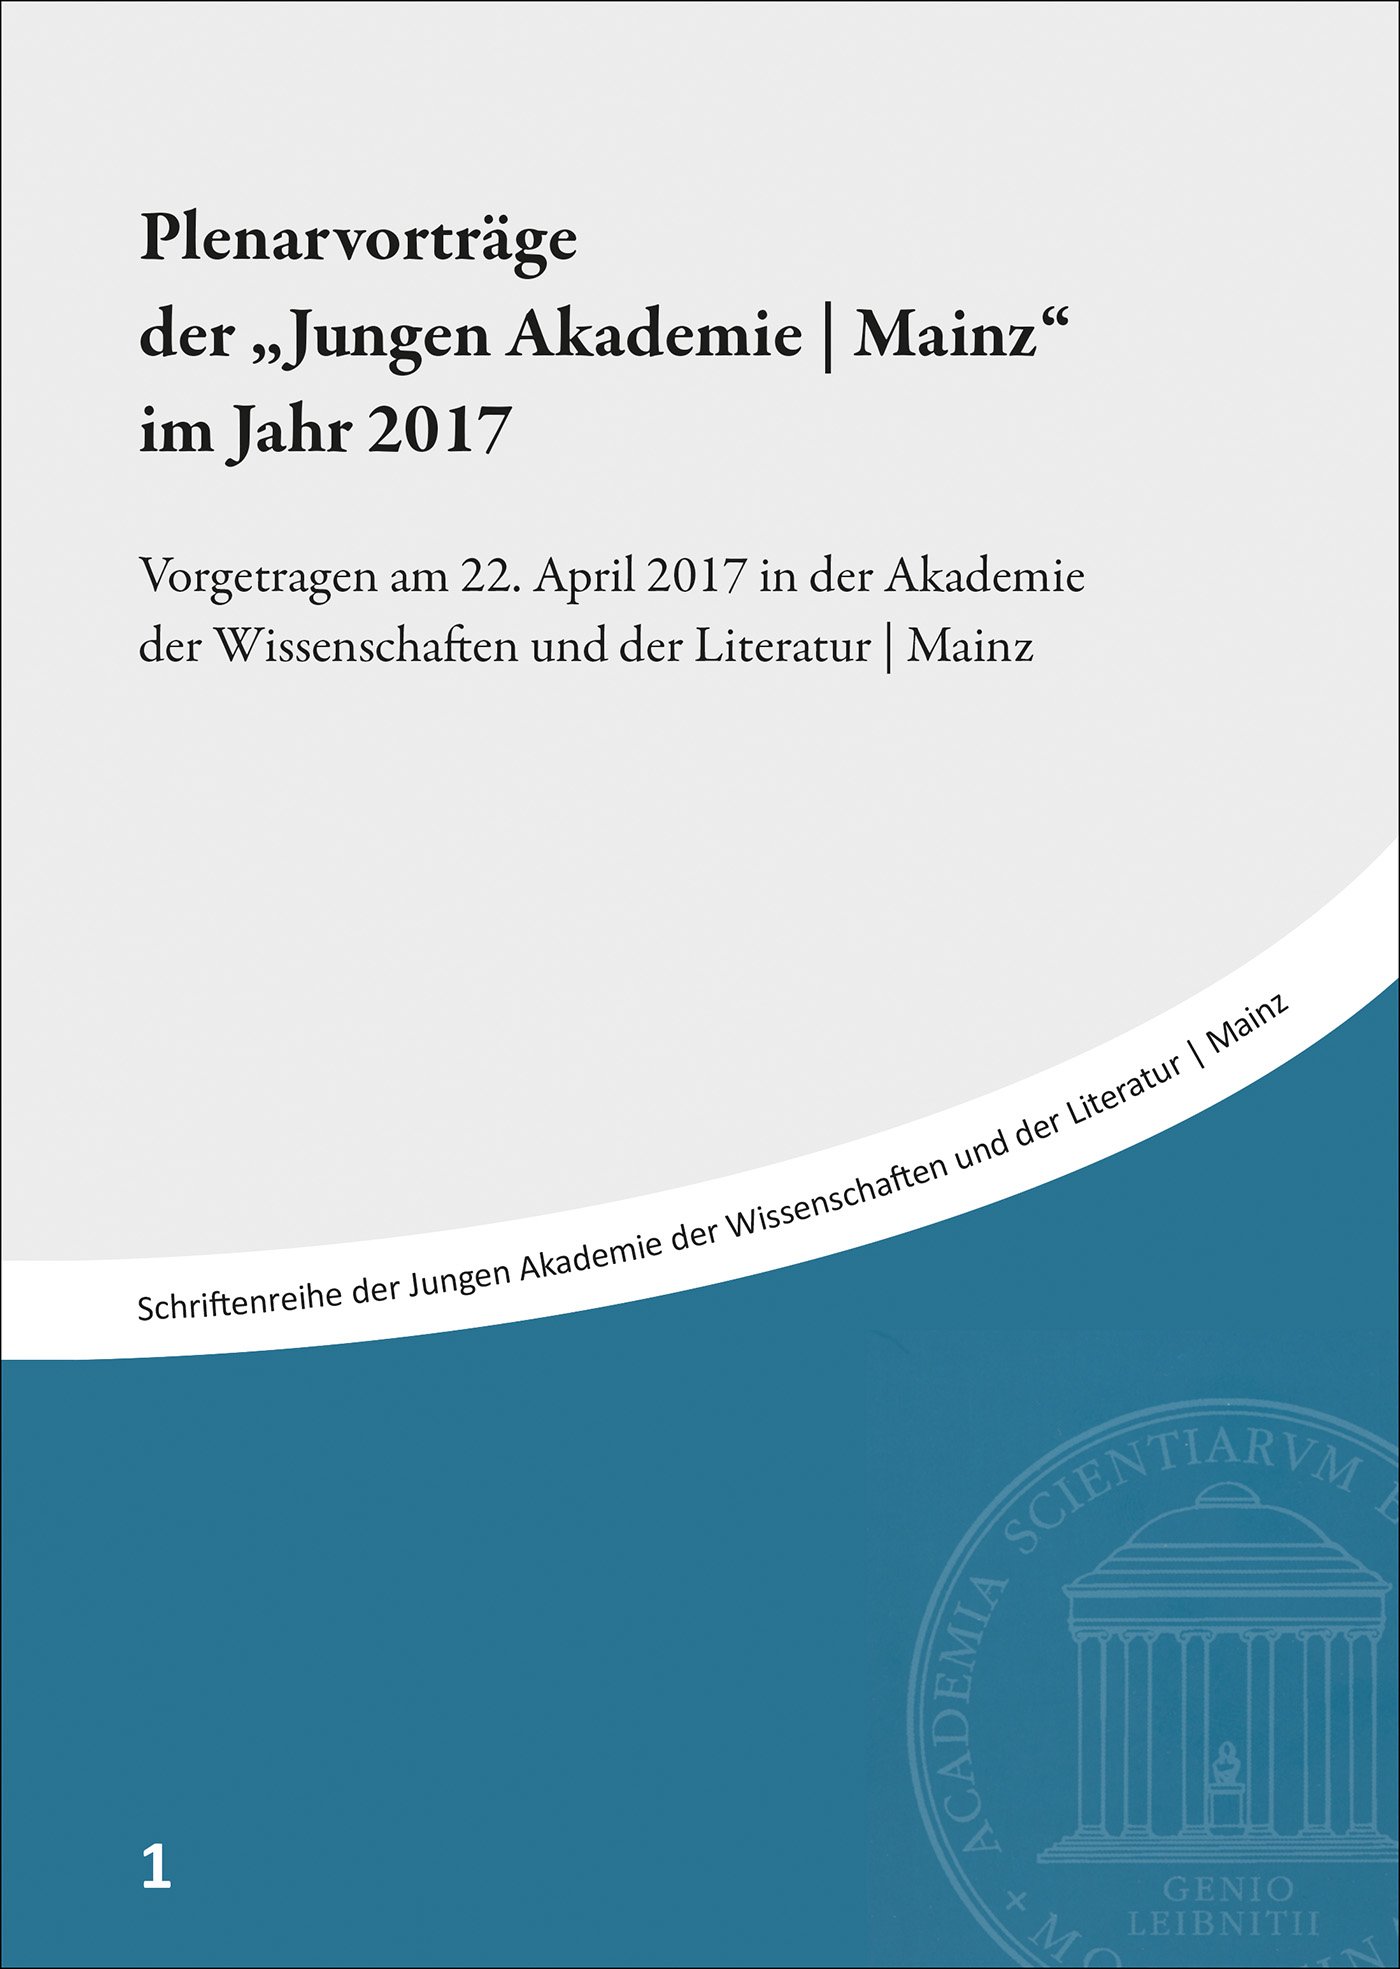 Plenarvorträge der "Jungen Akademie | Mainz" im Jahr 2017